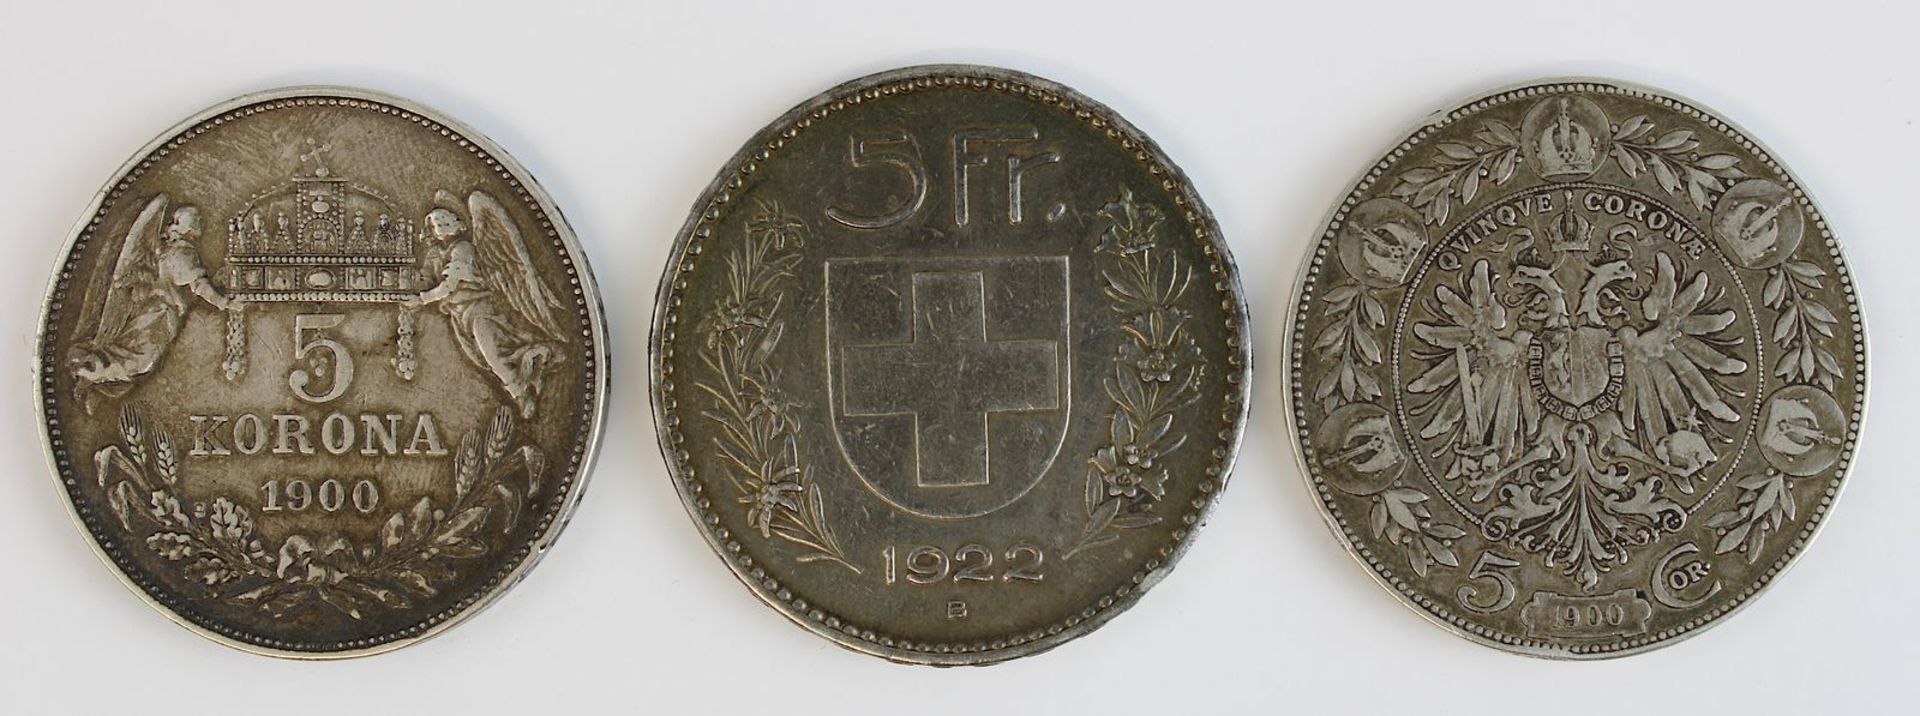 Drei Silbermünzen, Österreich/Ungarn und Schweiz, 1900 - 1923: Münze zu 5 Kronen, Österreich 1900, - Image 2 of 2